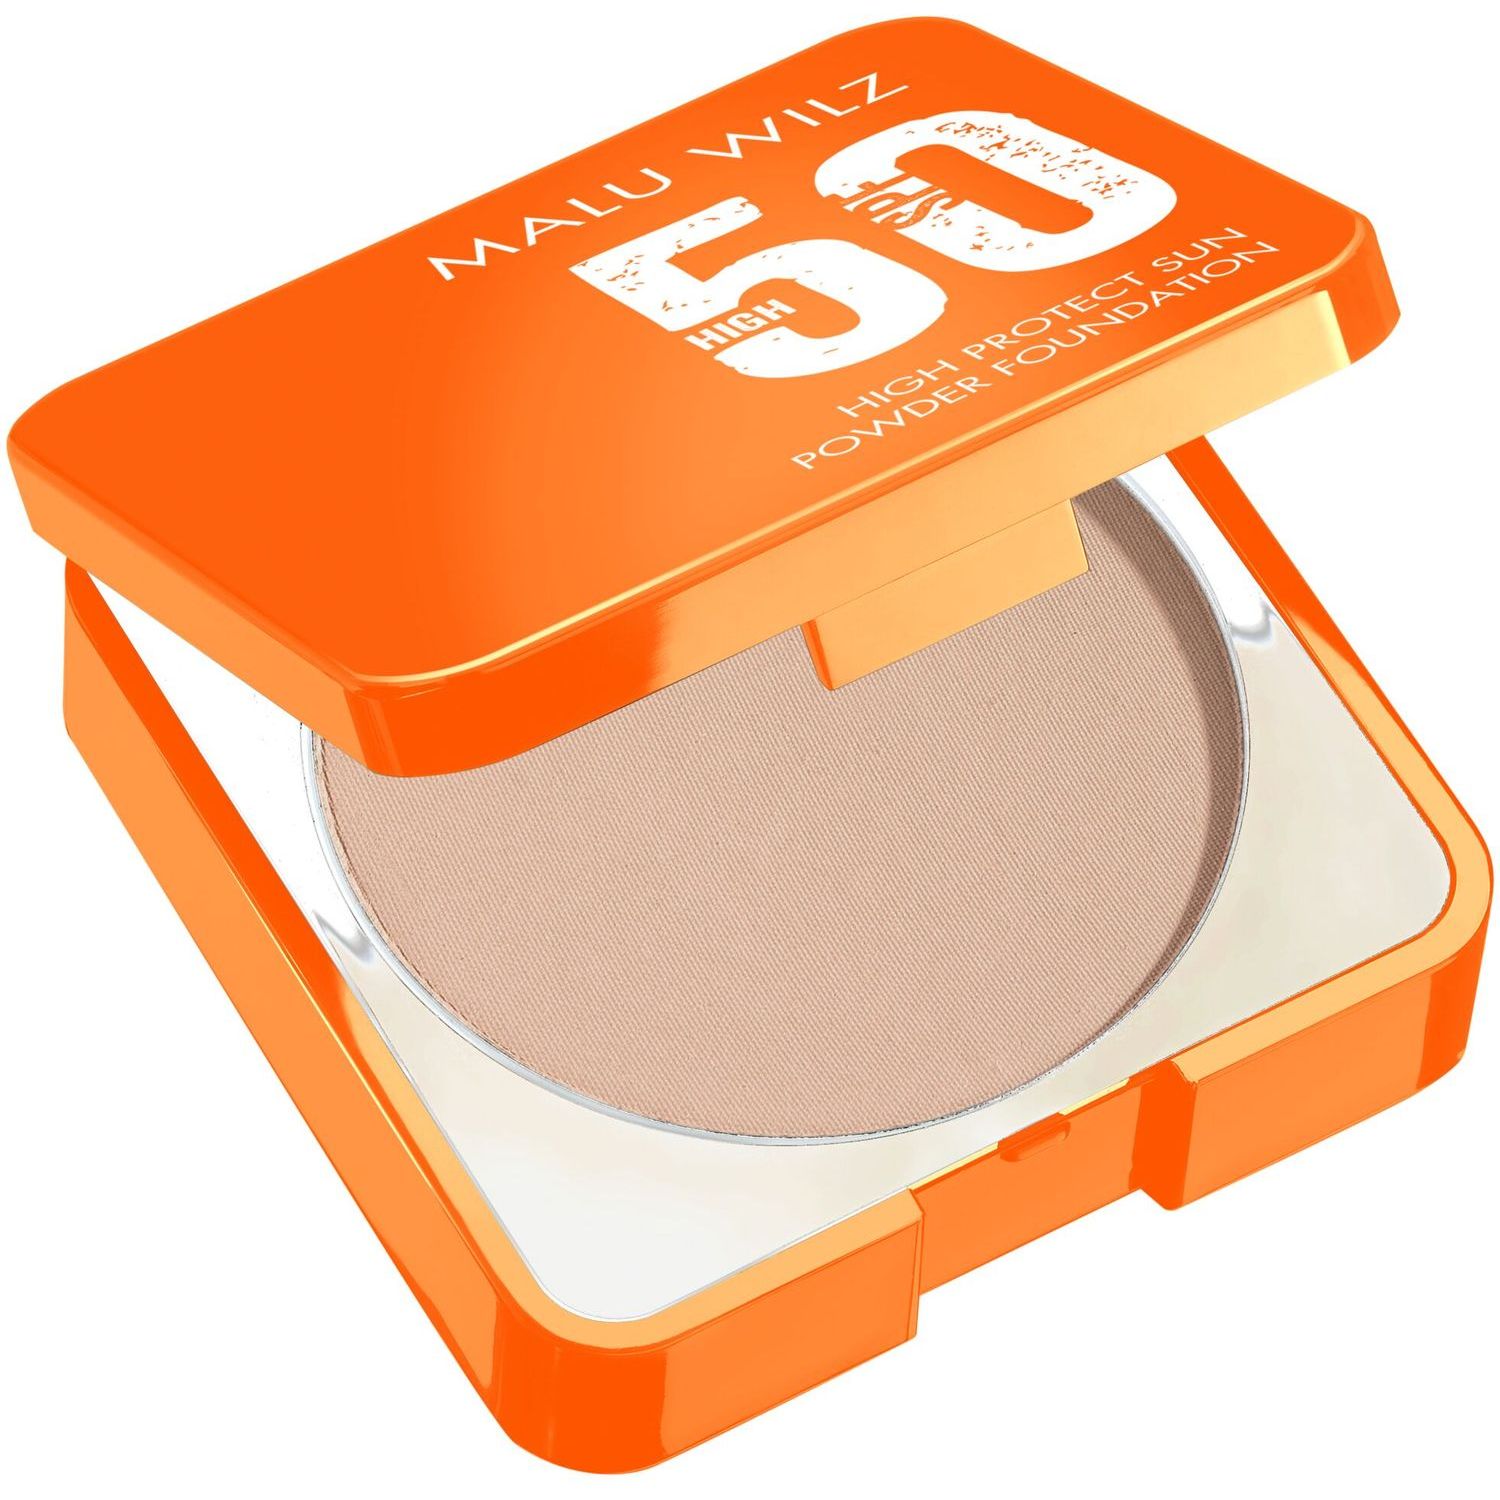 Тональна пудра для обличчя Malu Wilz High Protect Sun Powder Foundation SPF50, відтінок 60 (холодний беж), 11,5 г - фото 1